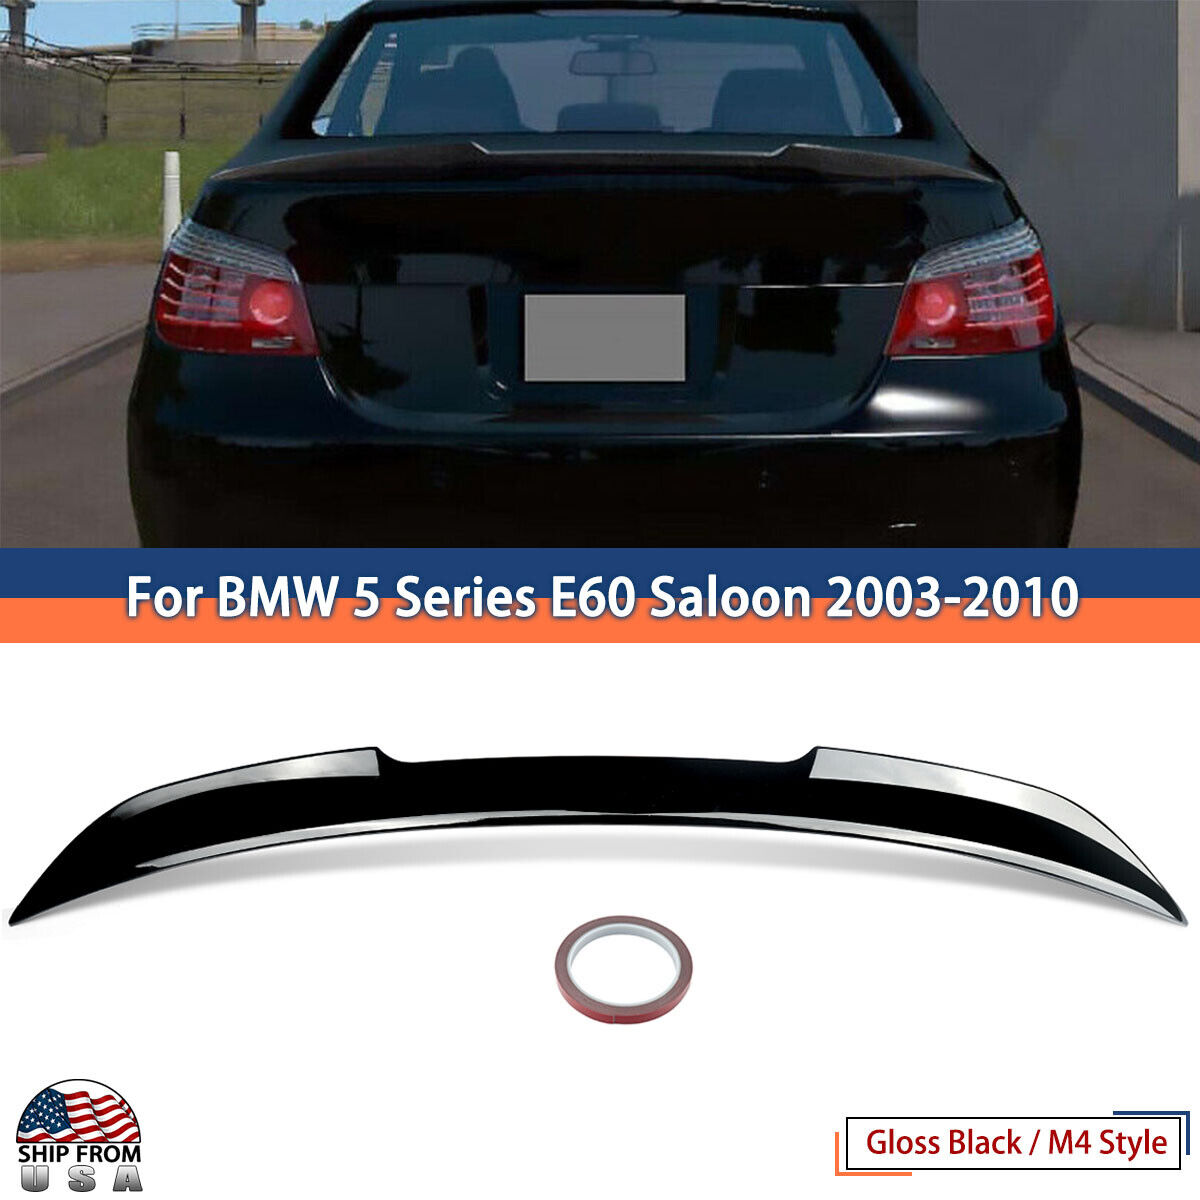 For BMW E60 535i 550i 2003-2010 Highkick M4 Style Trunk Spoiler Wing Gloss Black